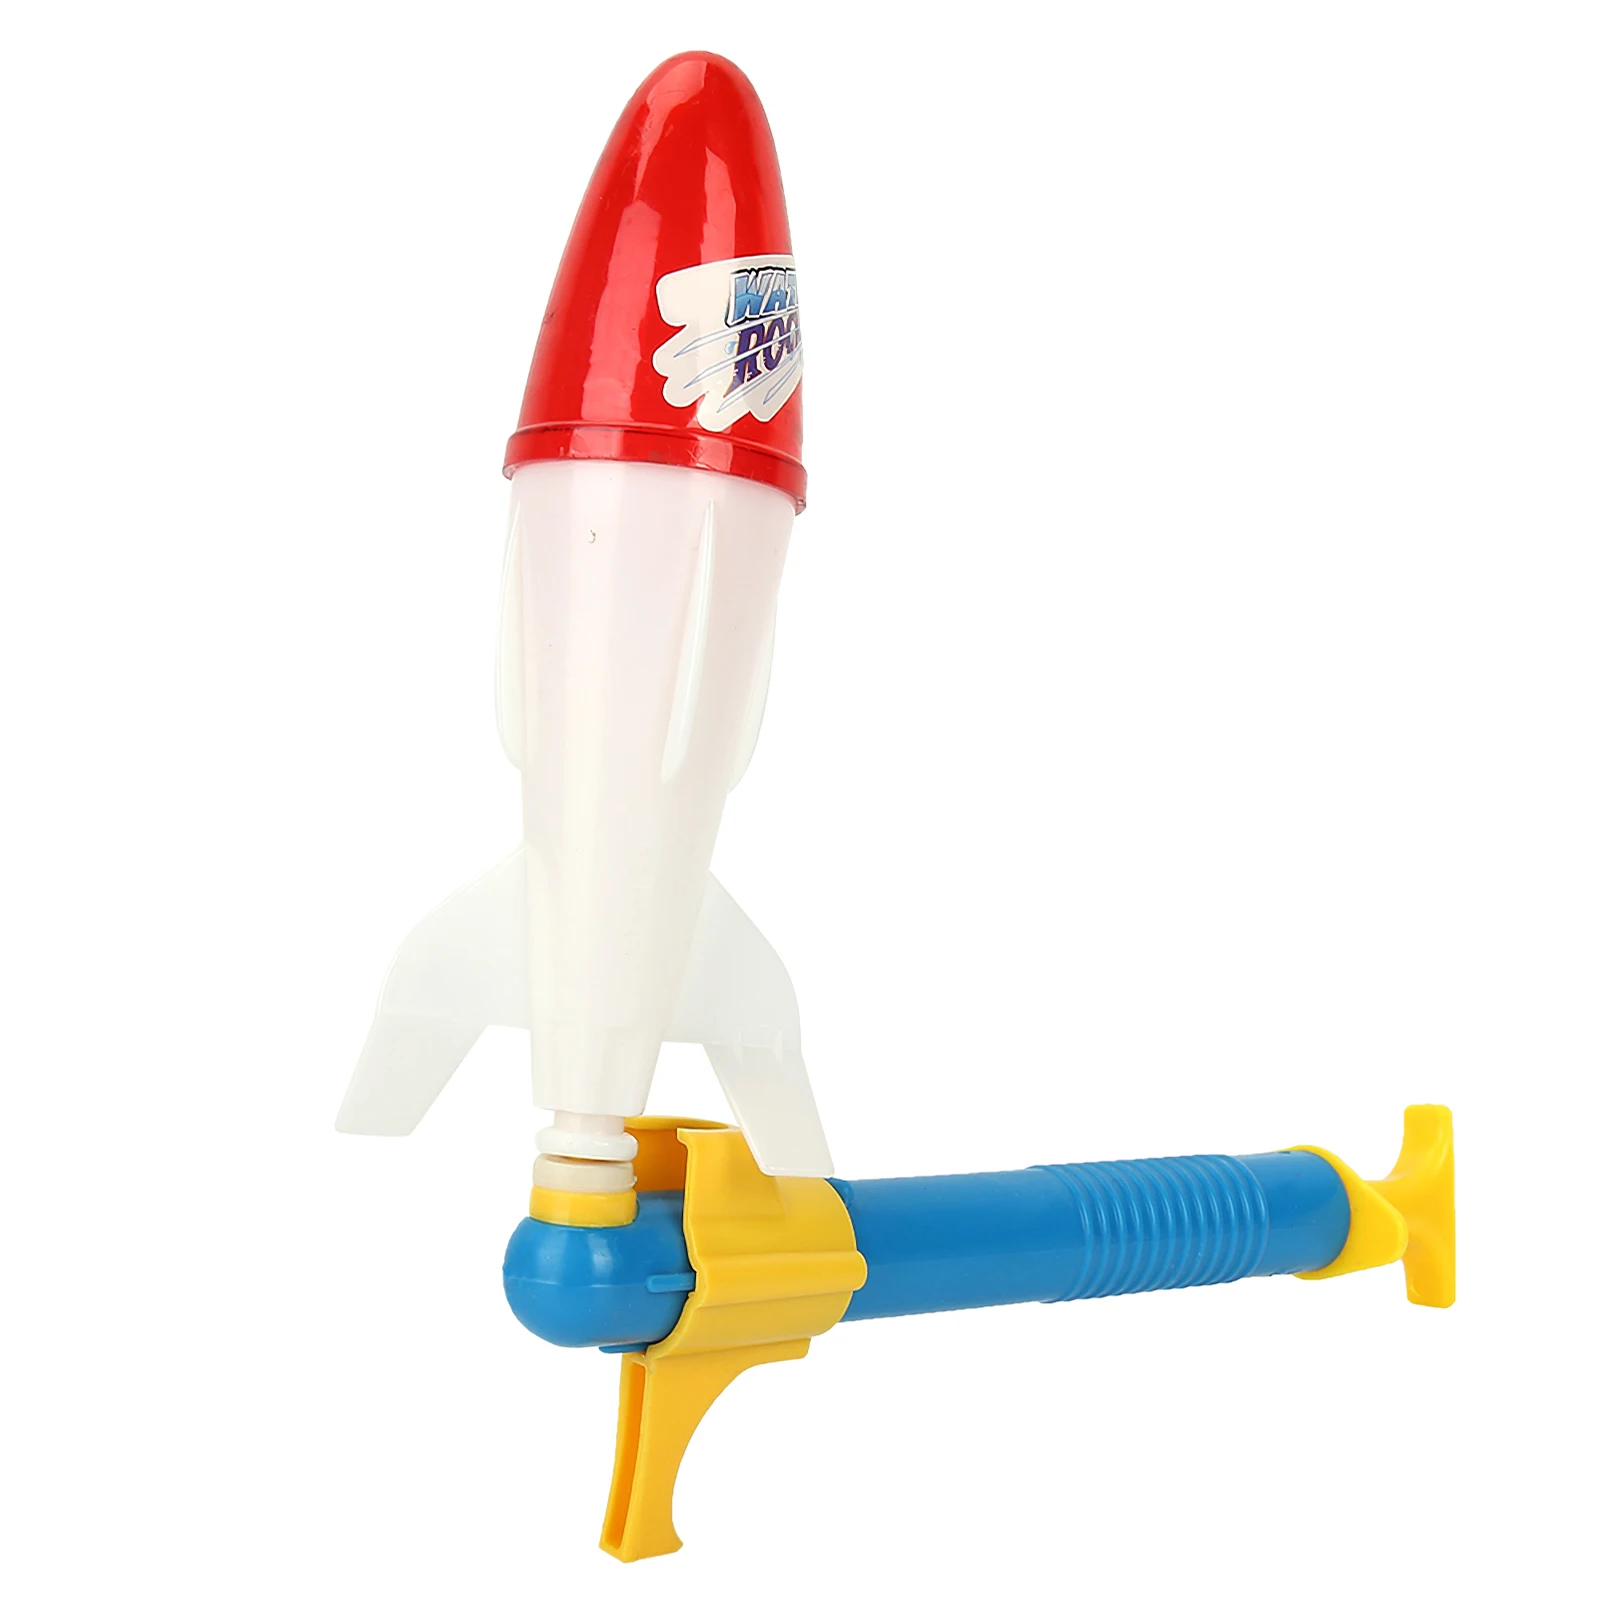 

Детский водяной пистолет, пластиковая игрушка для развлечения, эжектор ракеты, мощная игрушка для бассейна